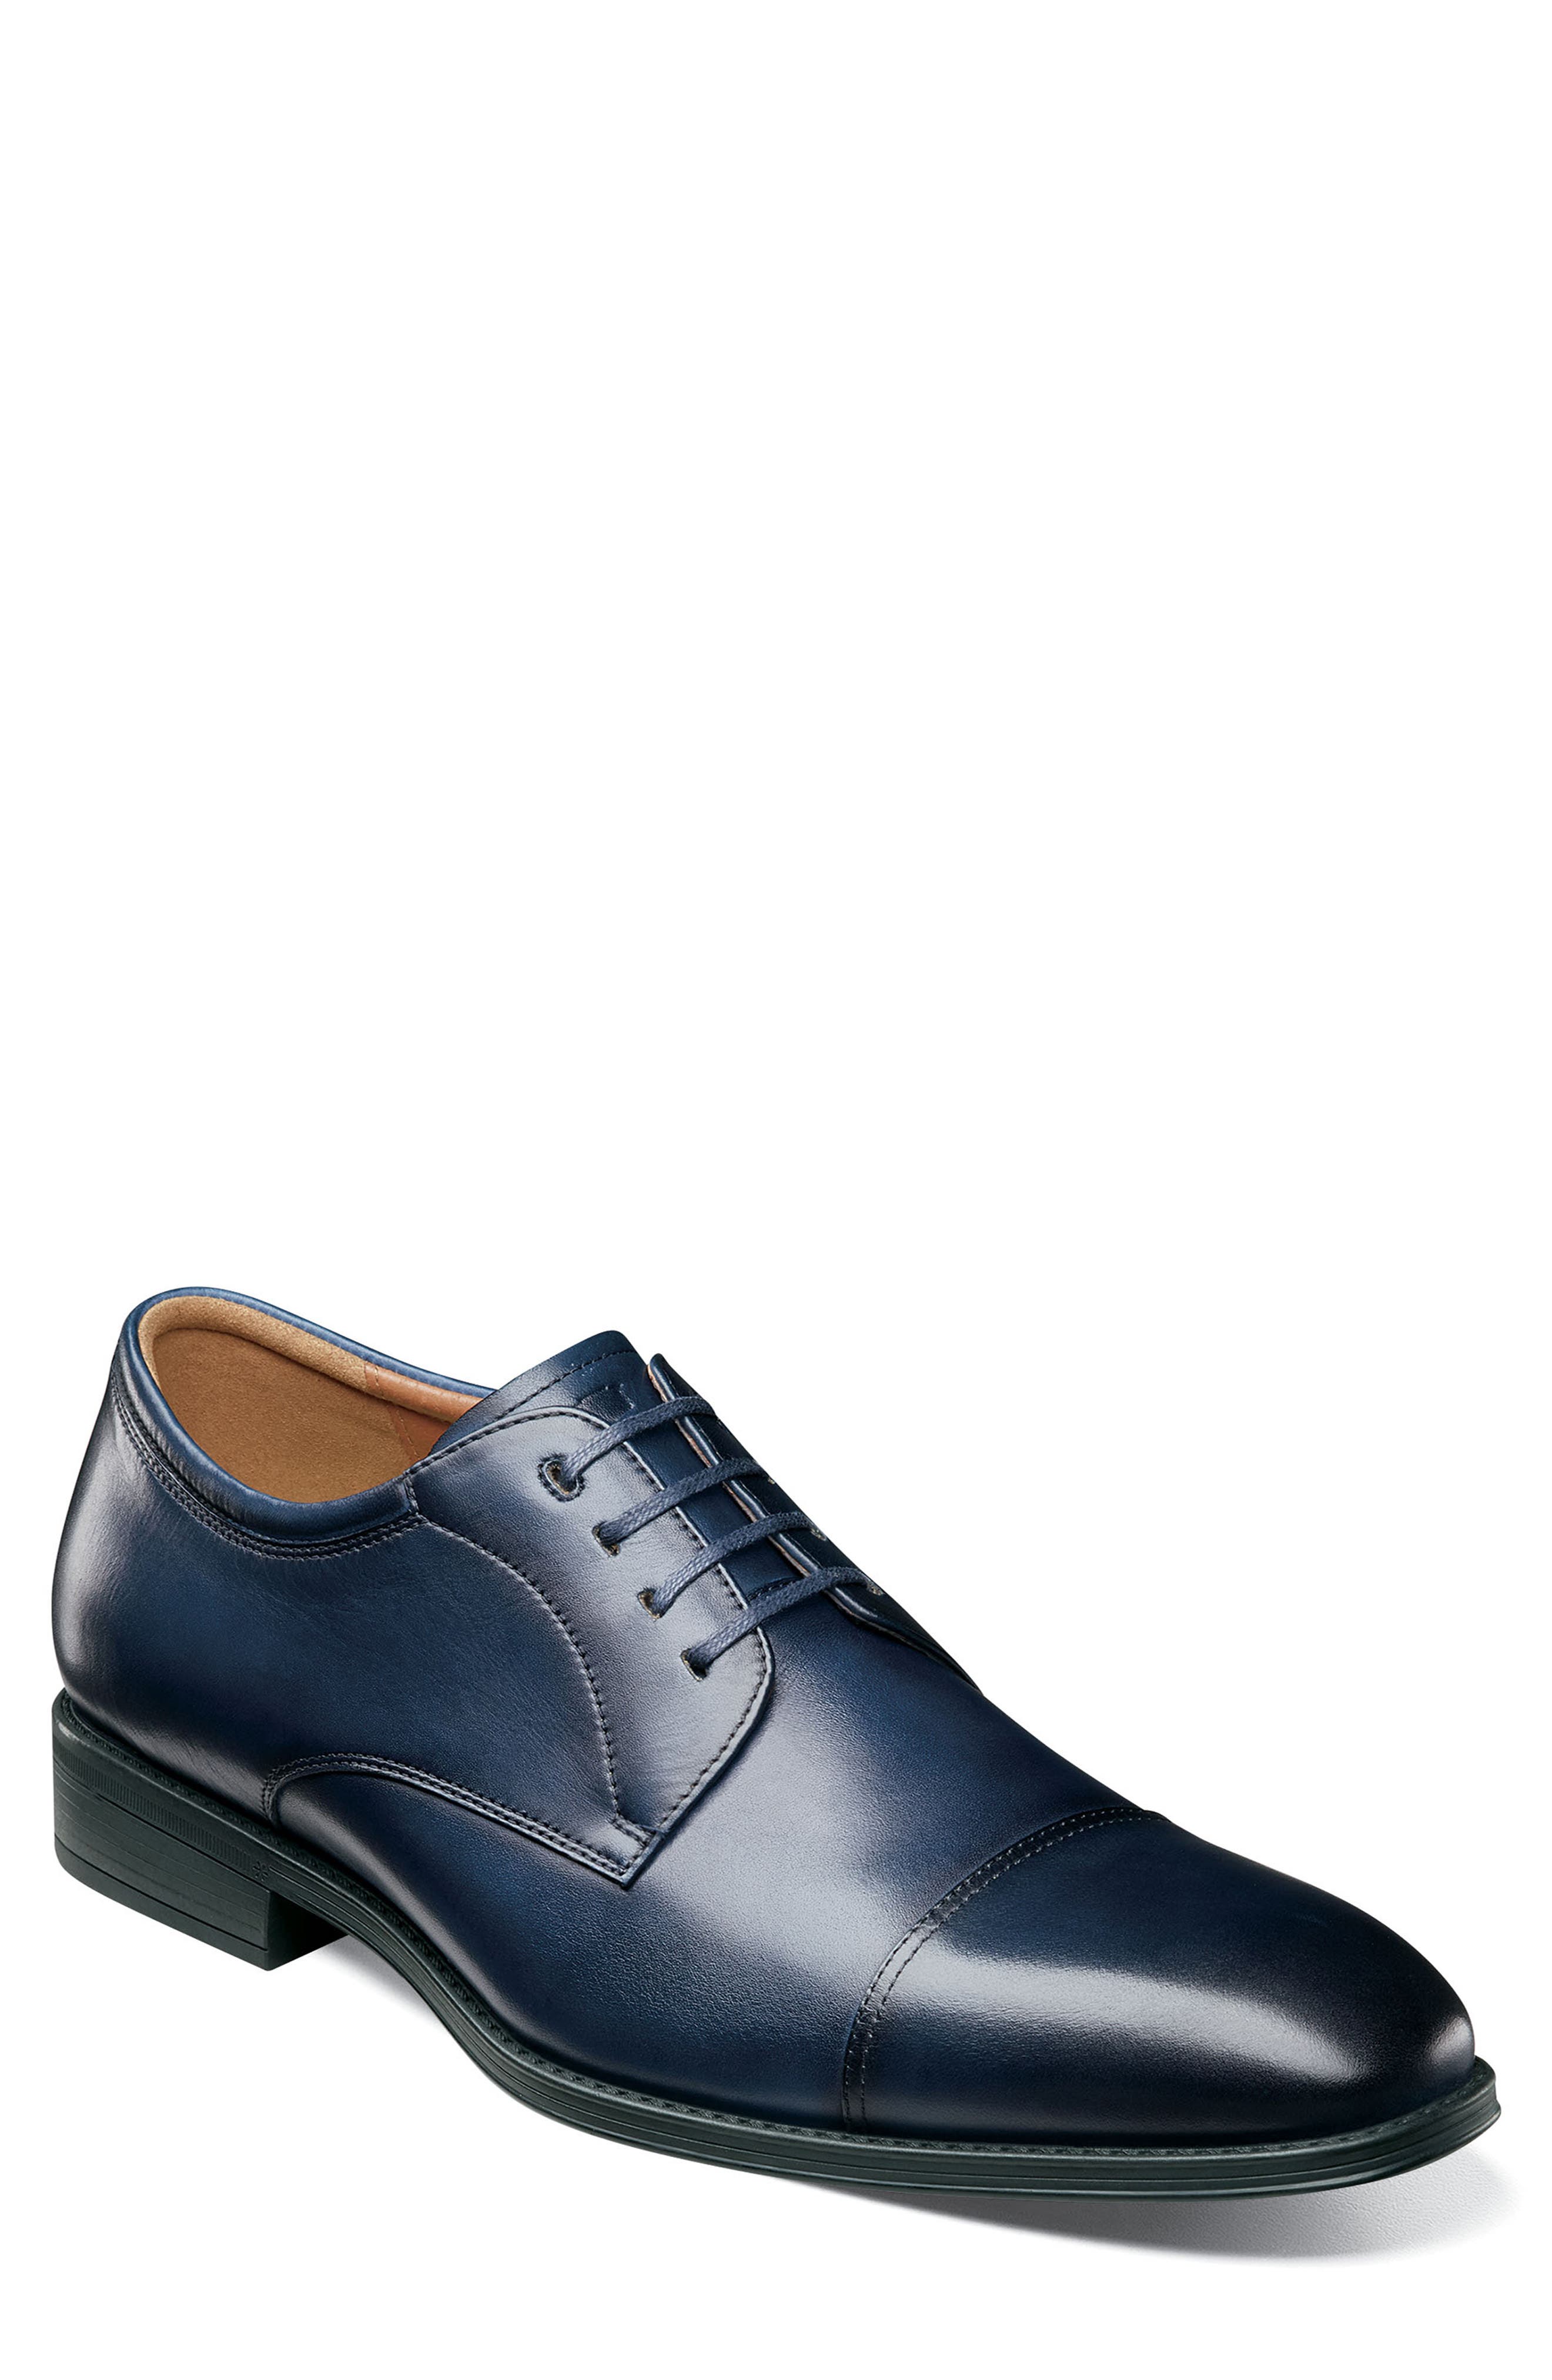 men's blue oxford shoes